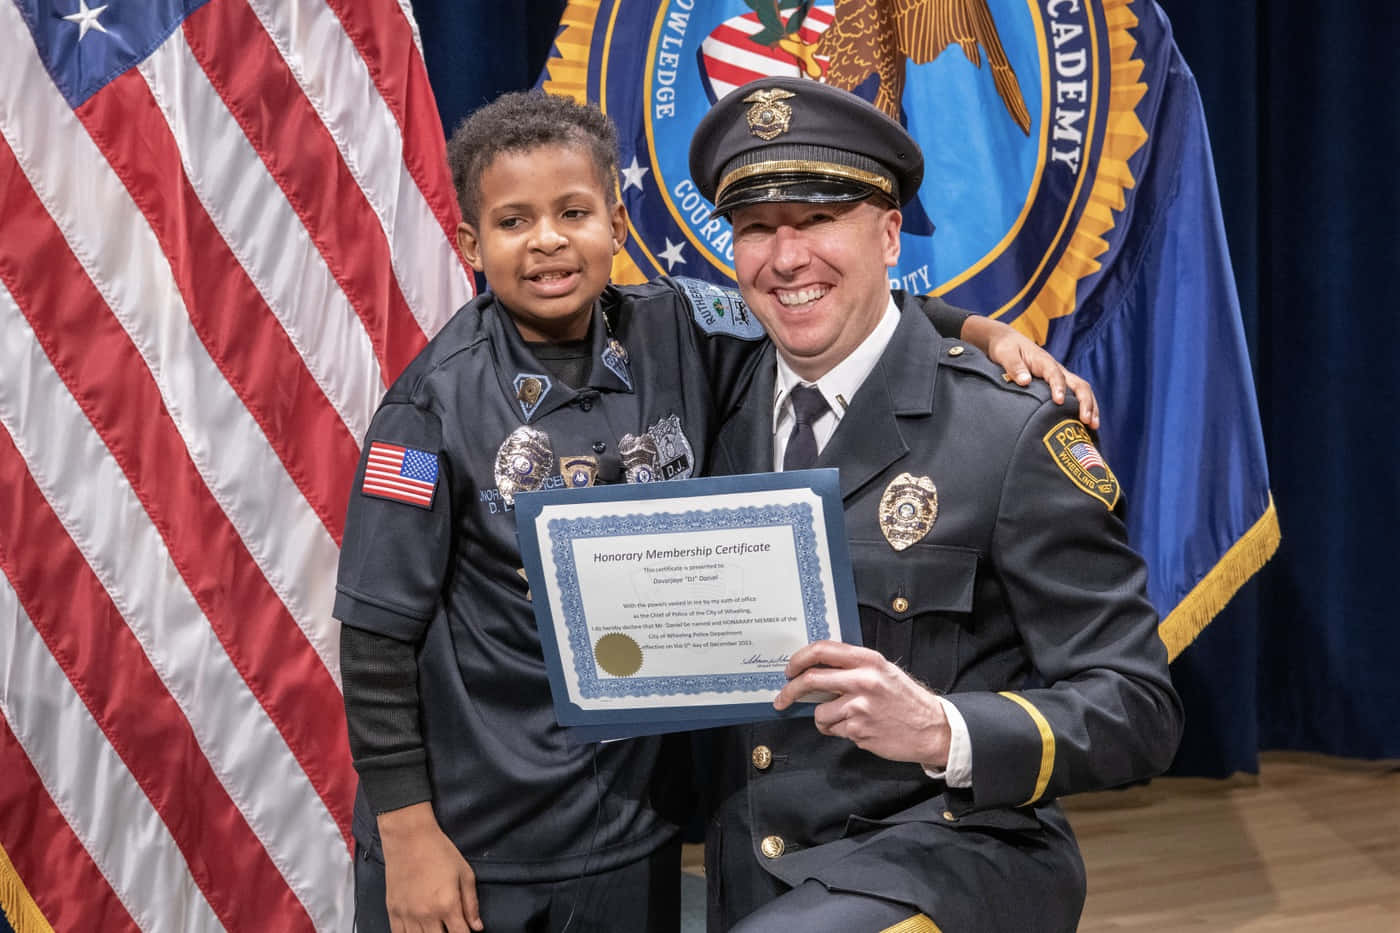 En politibetjent giver et certifikat til en ung dreng. Wallpaper